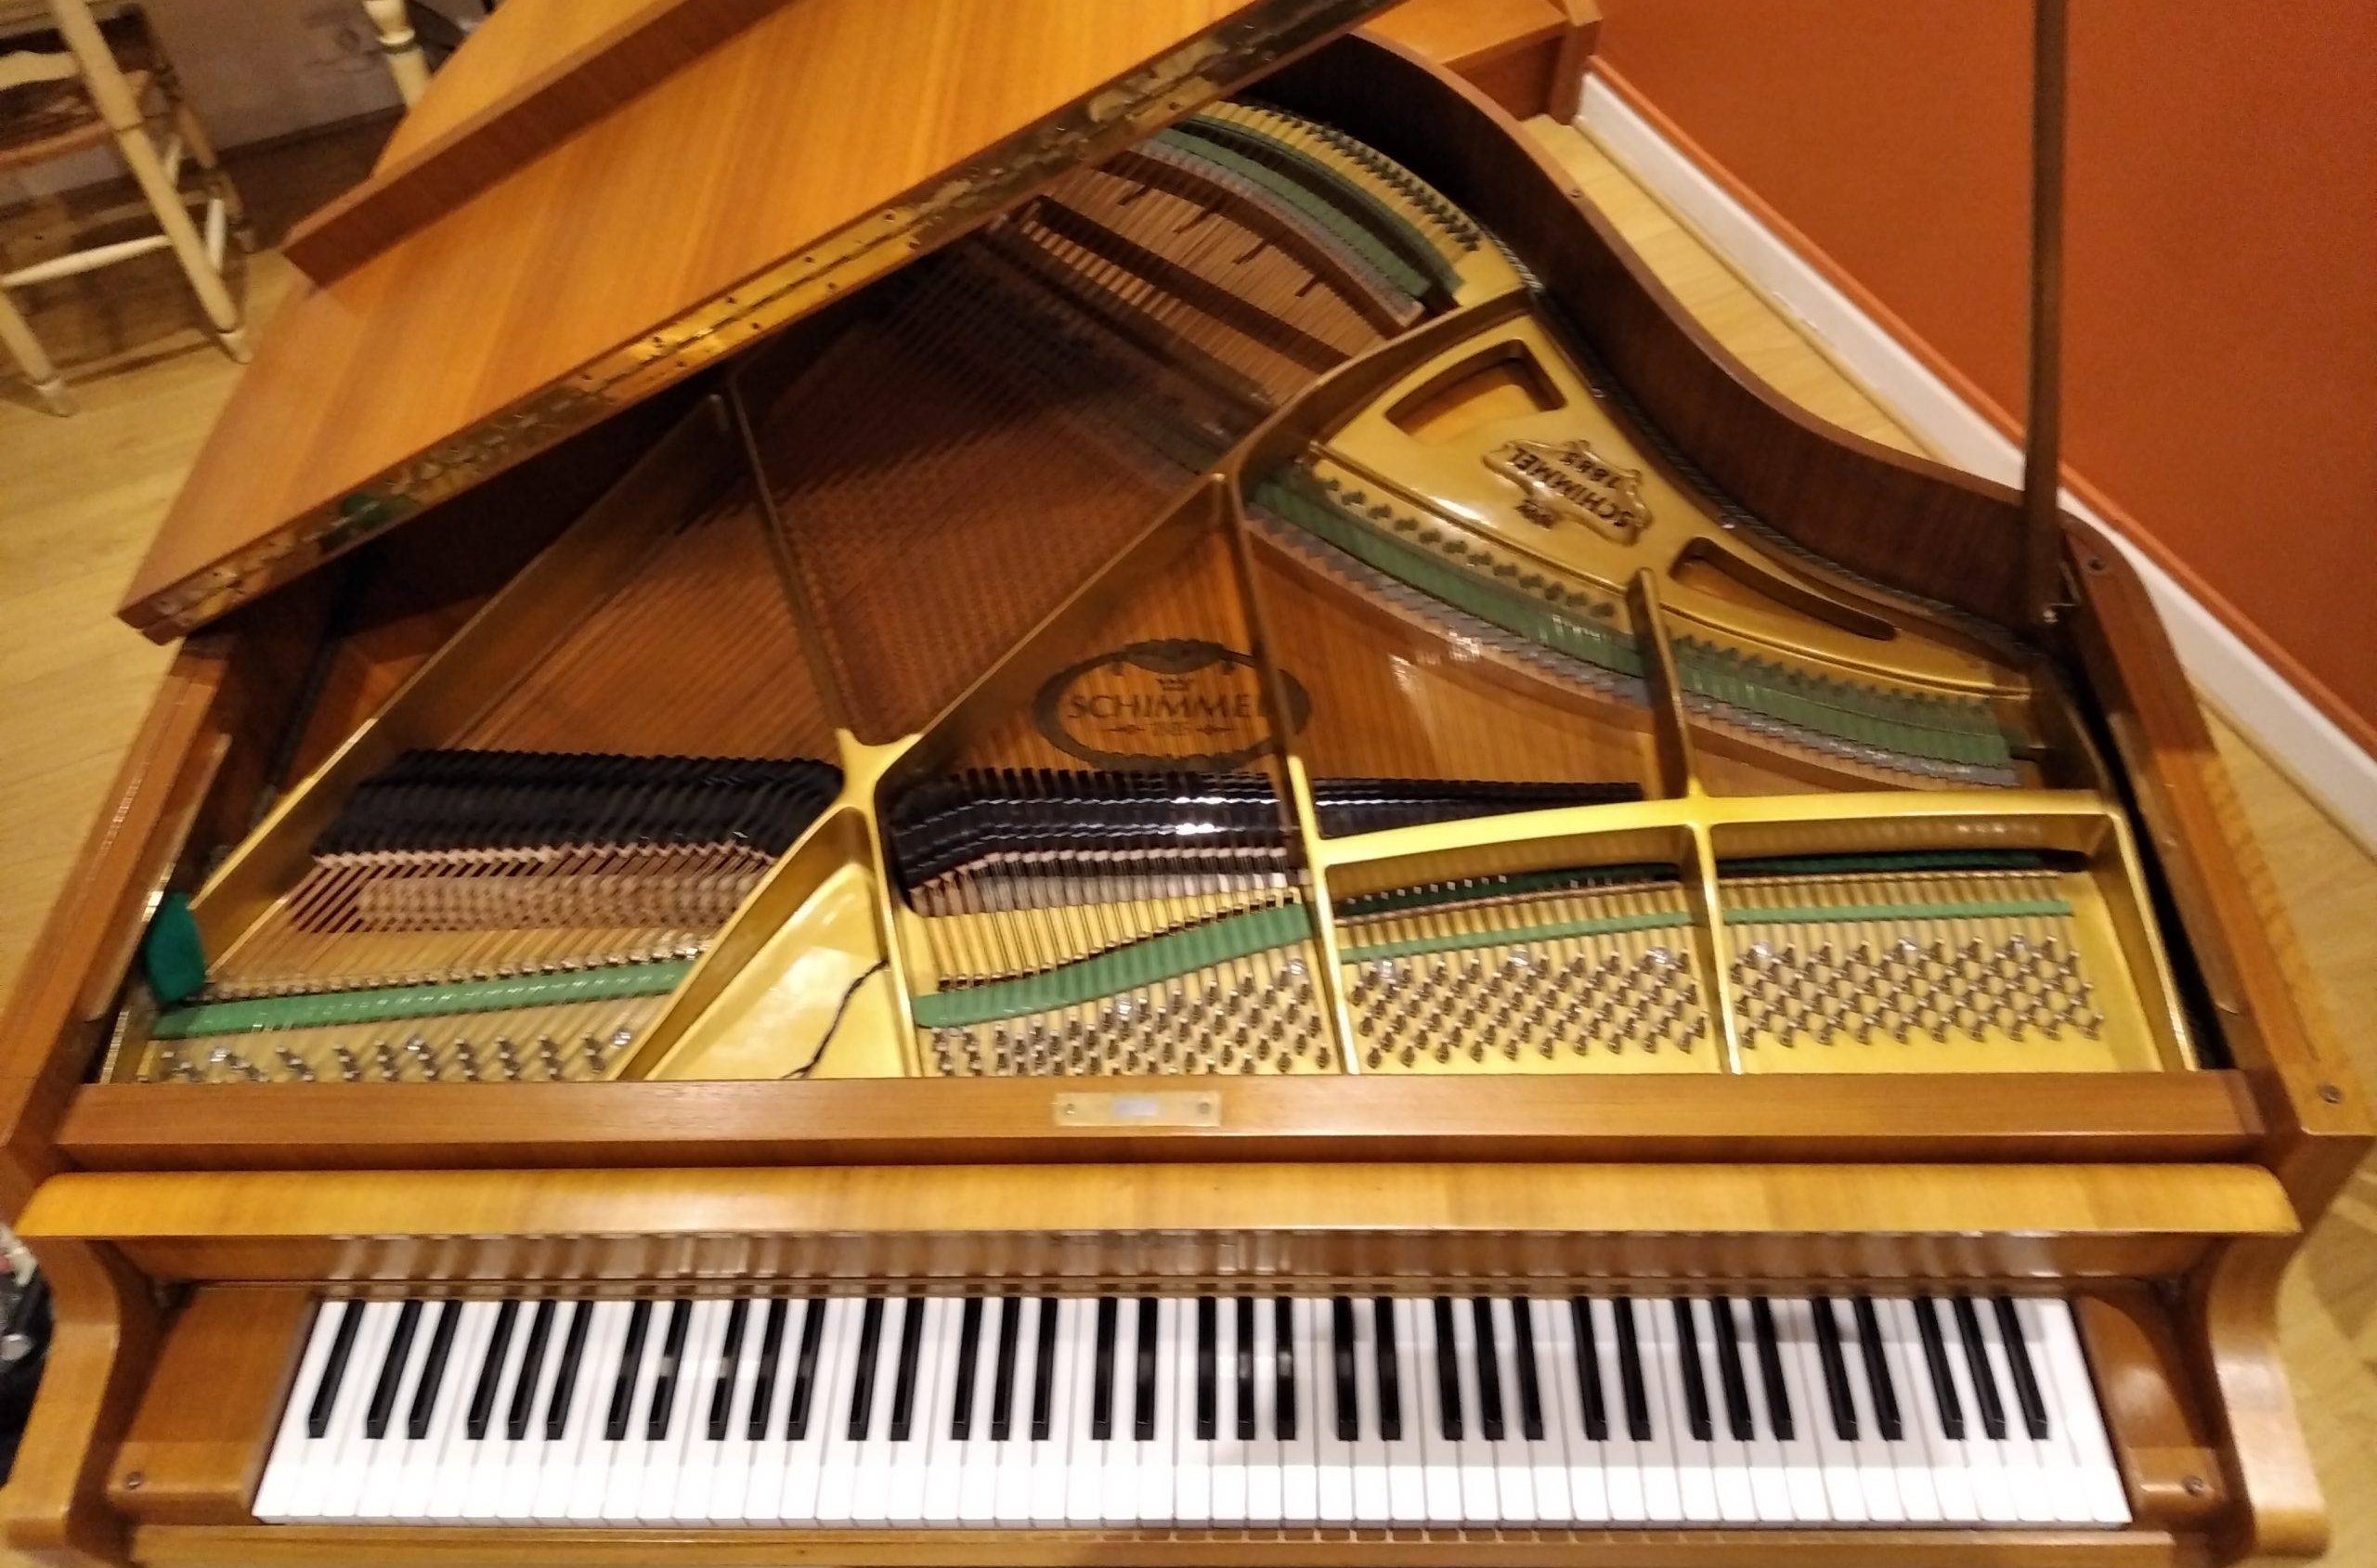 Achetez votre piano grâce à une experte qui vous aidera à vérifier que ce piano vaut la peine d'être acheté